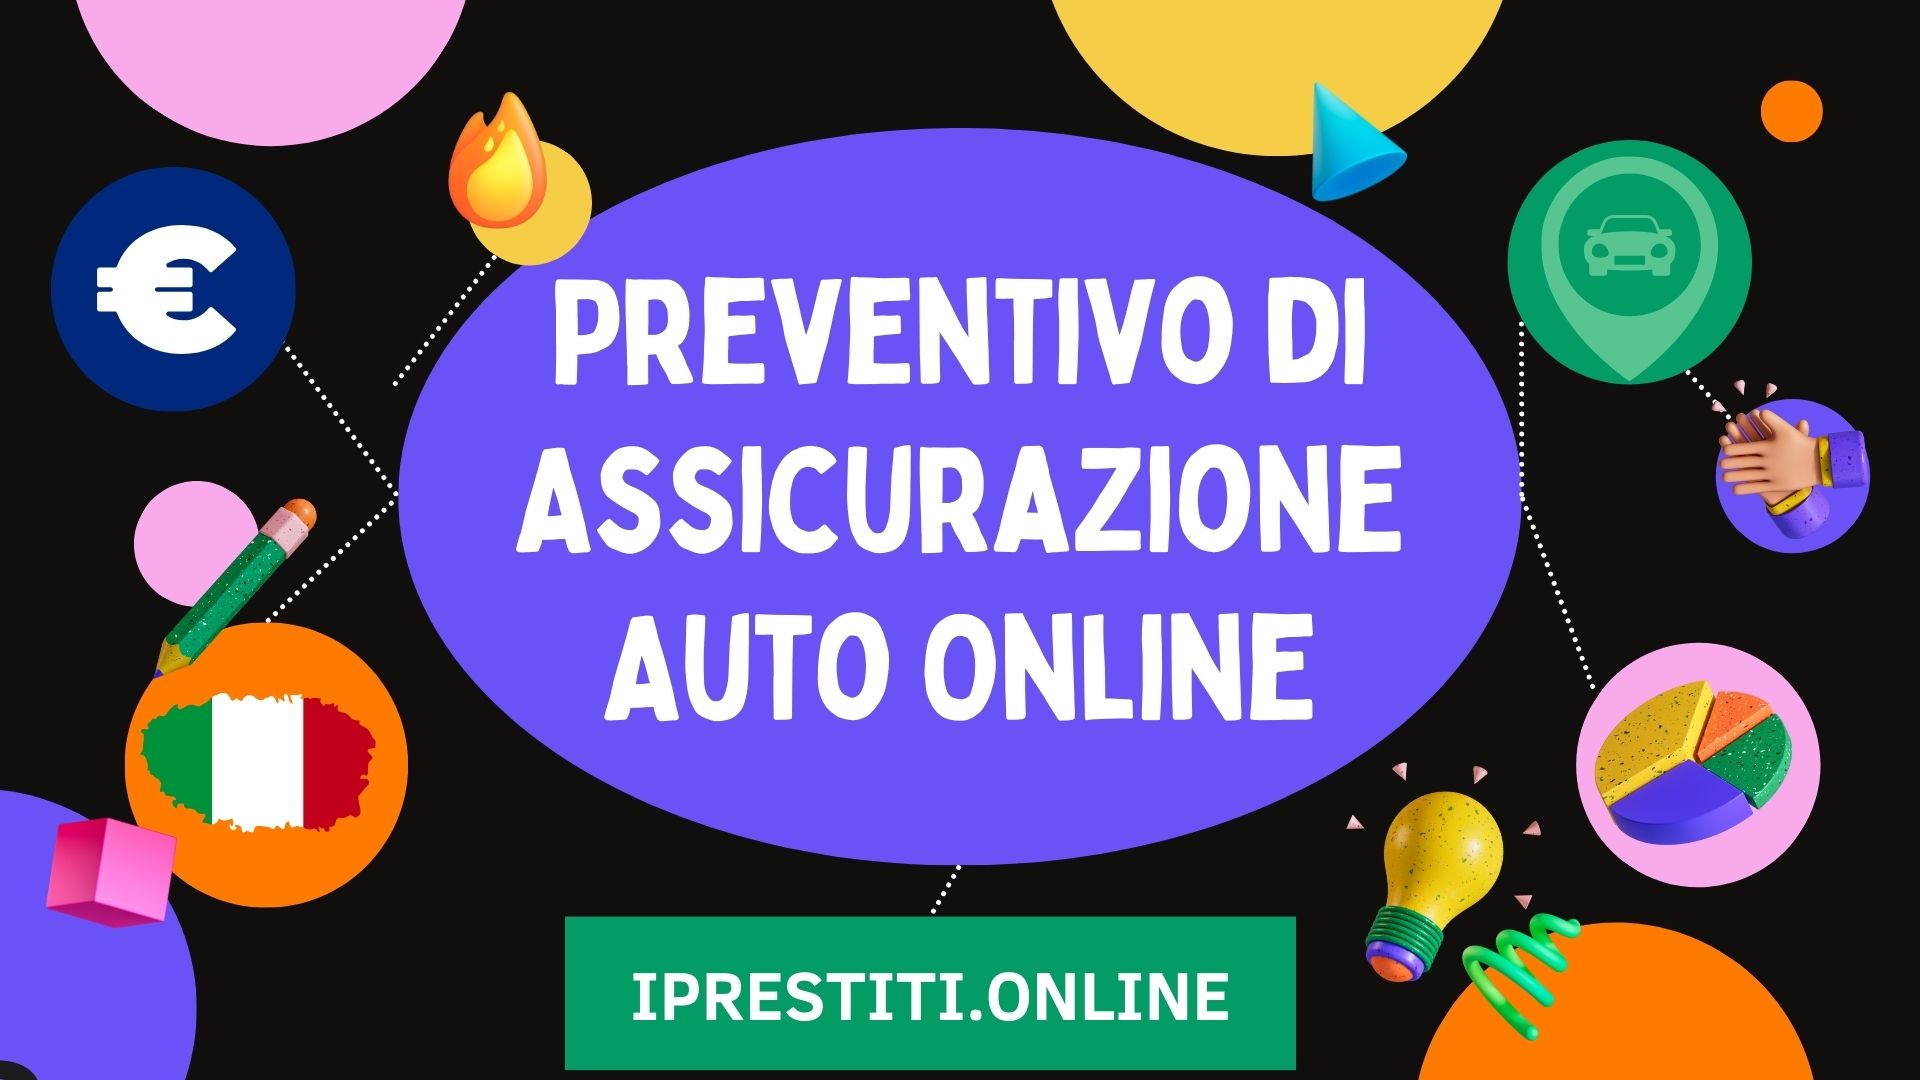 Preventivo di Assicurazione Auto Online